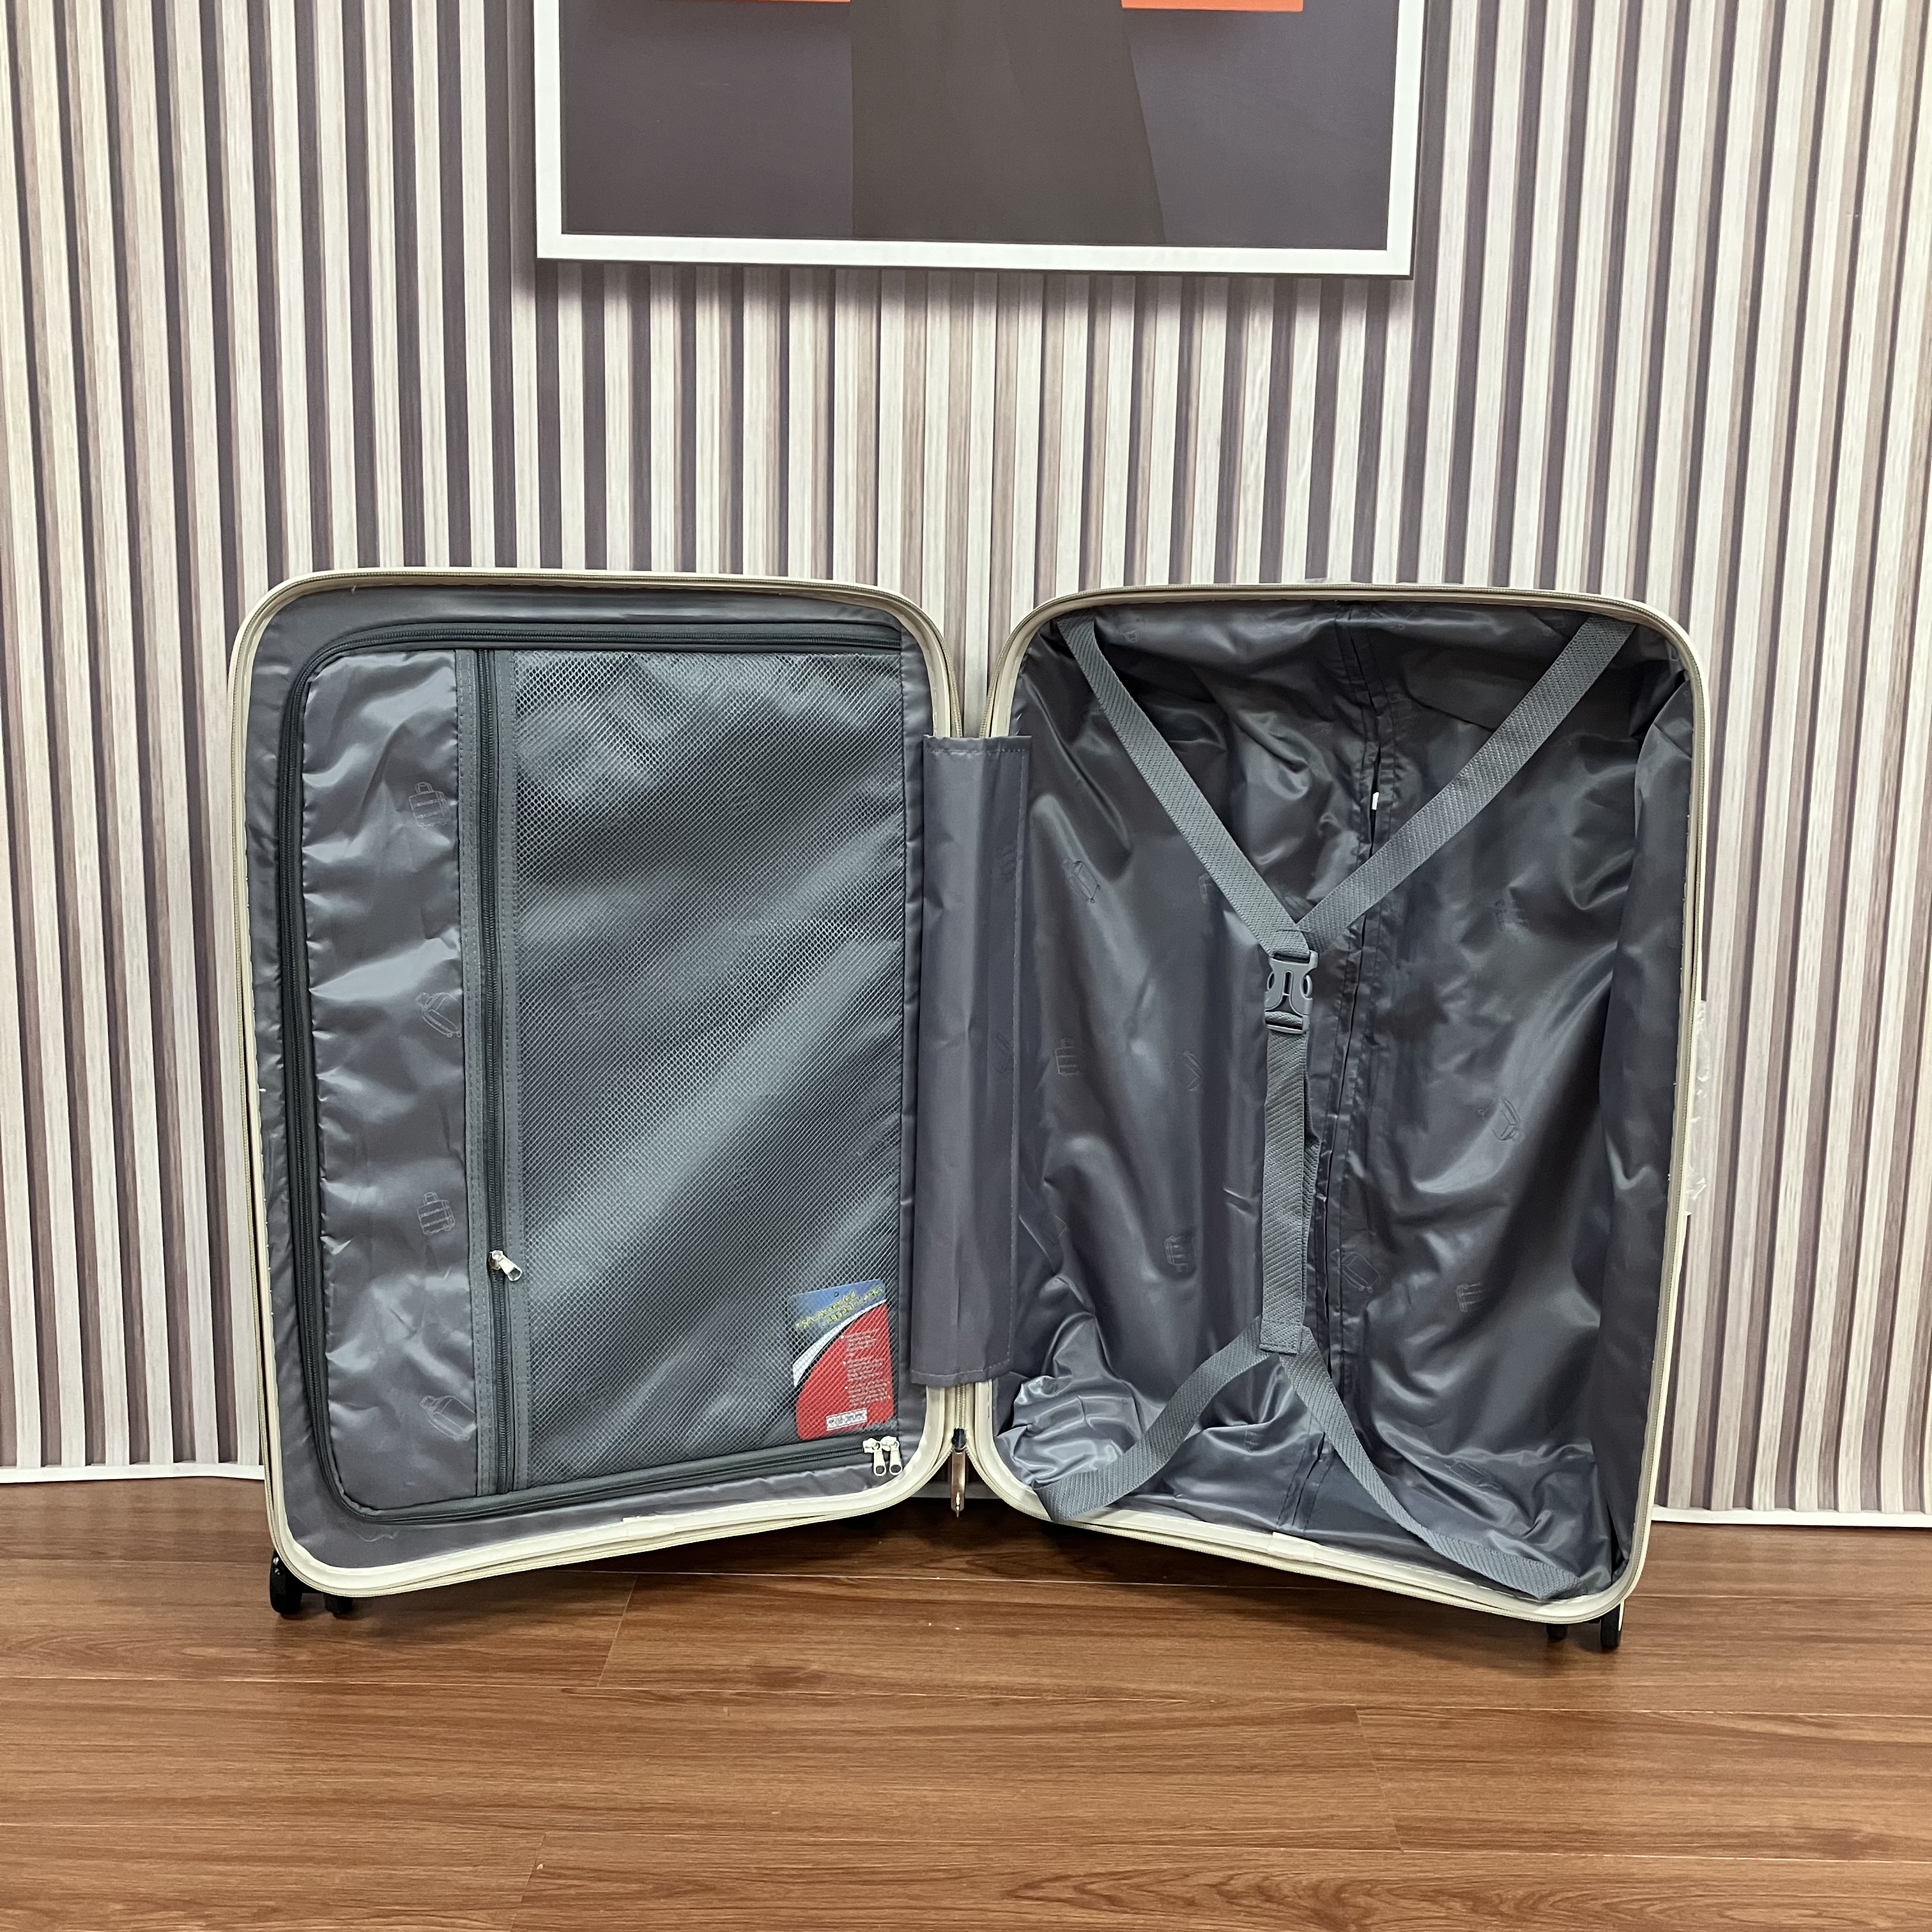 Expandable Luggage Sets-2